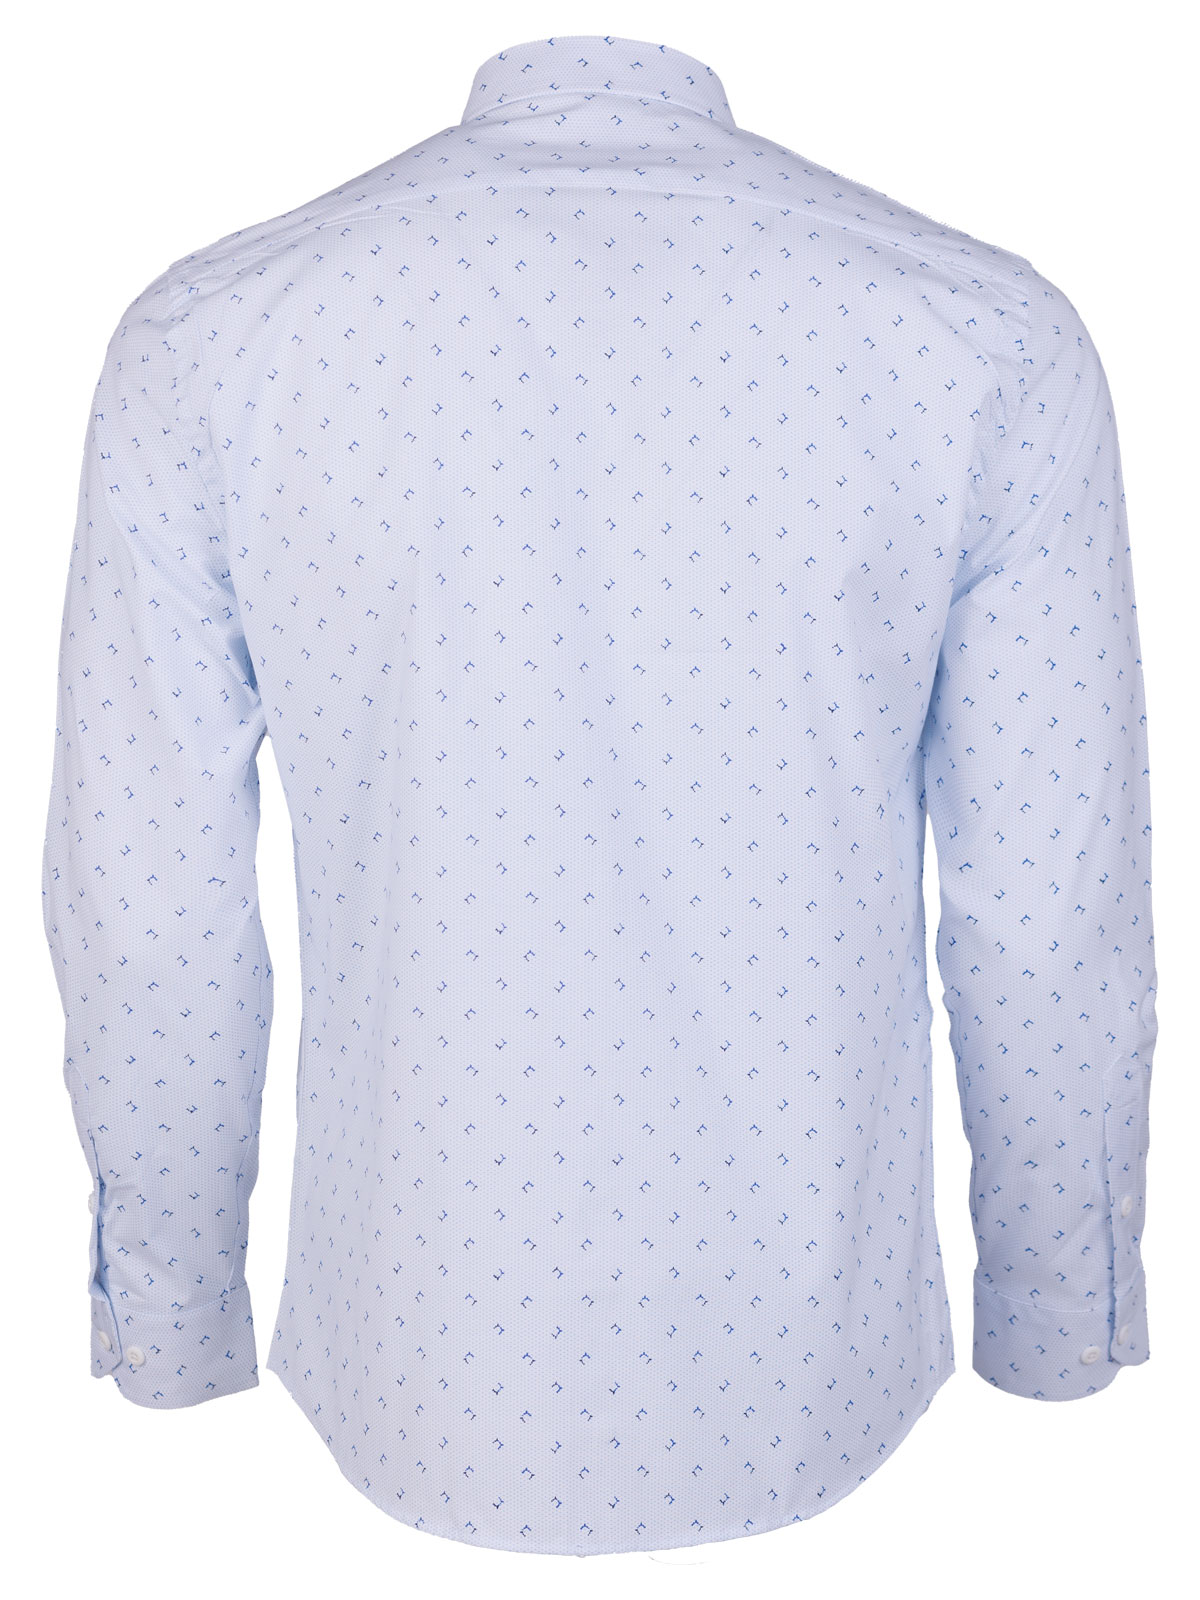 Бяла риза със светли сини фигури - 21601 79.00 лв img2